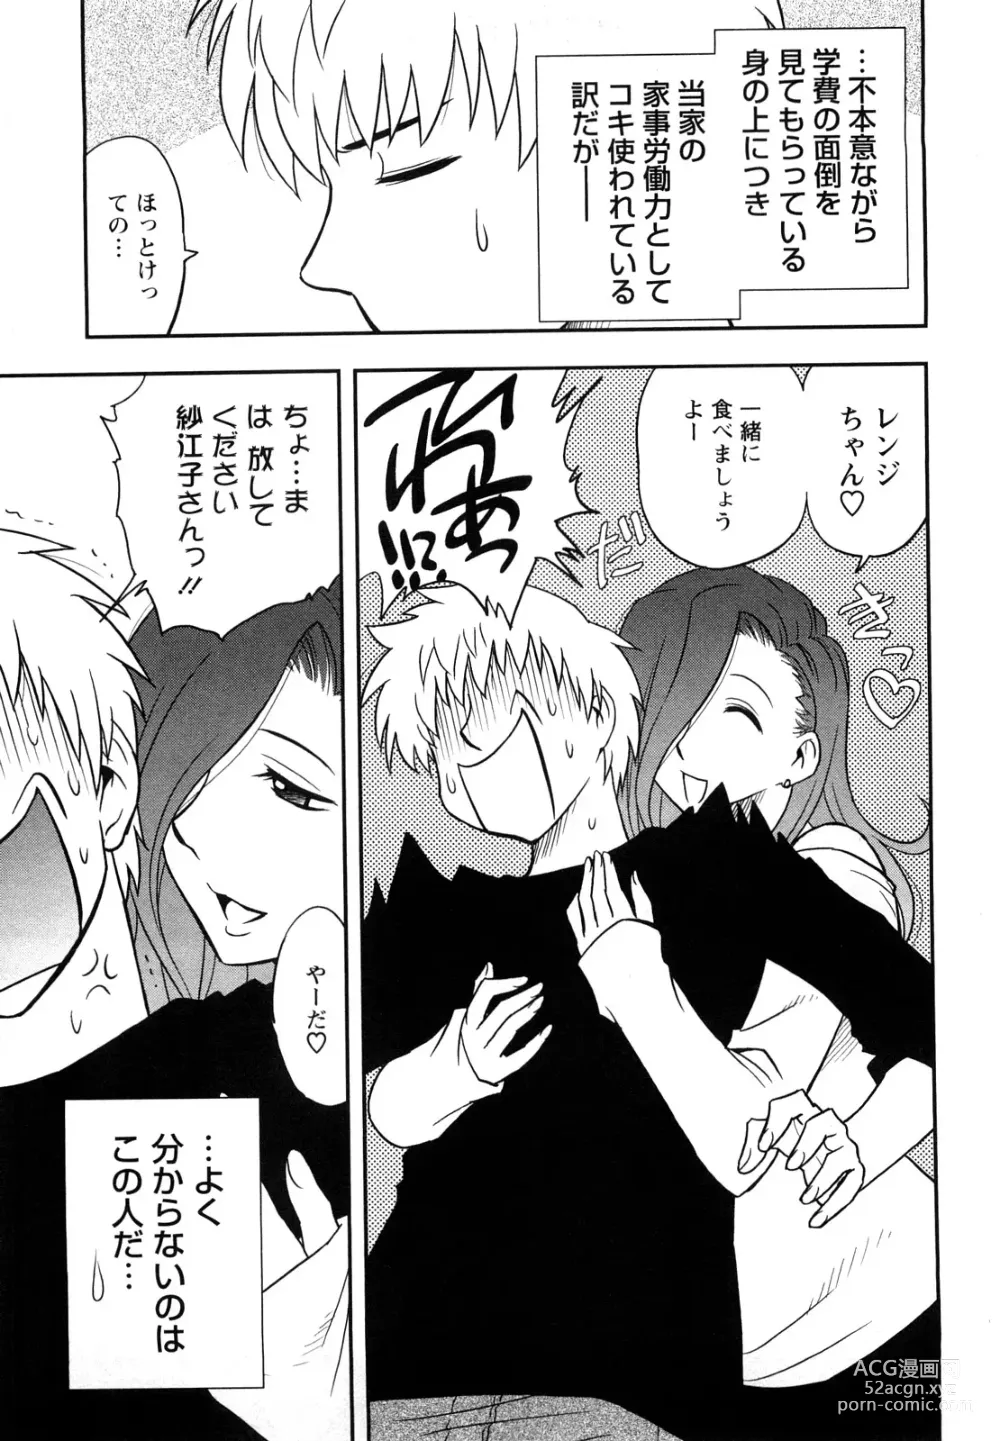 Page 11 of manga Megamisou Panic!